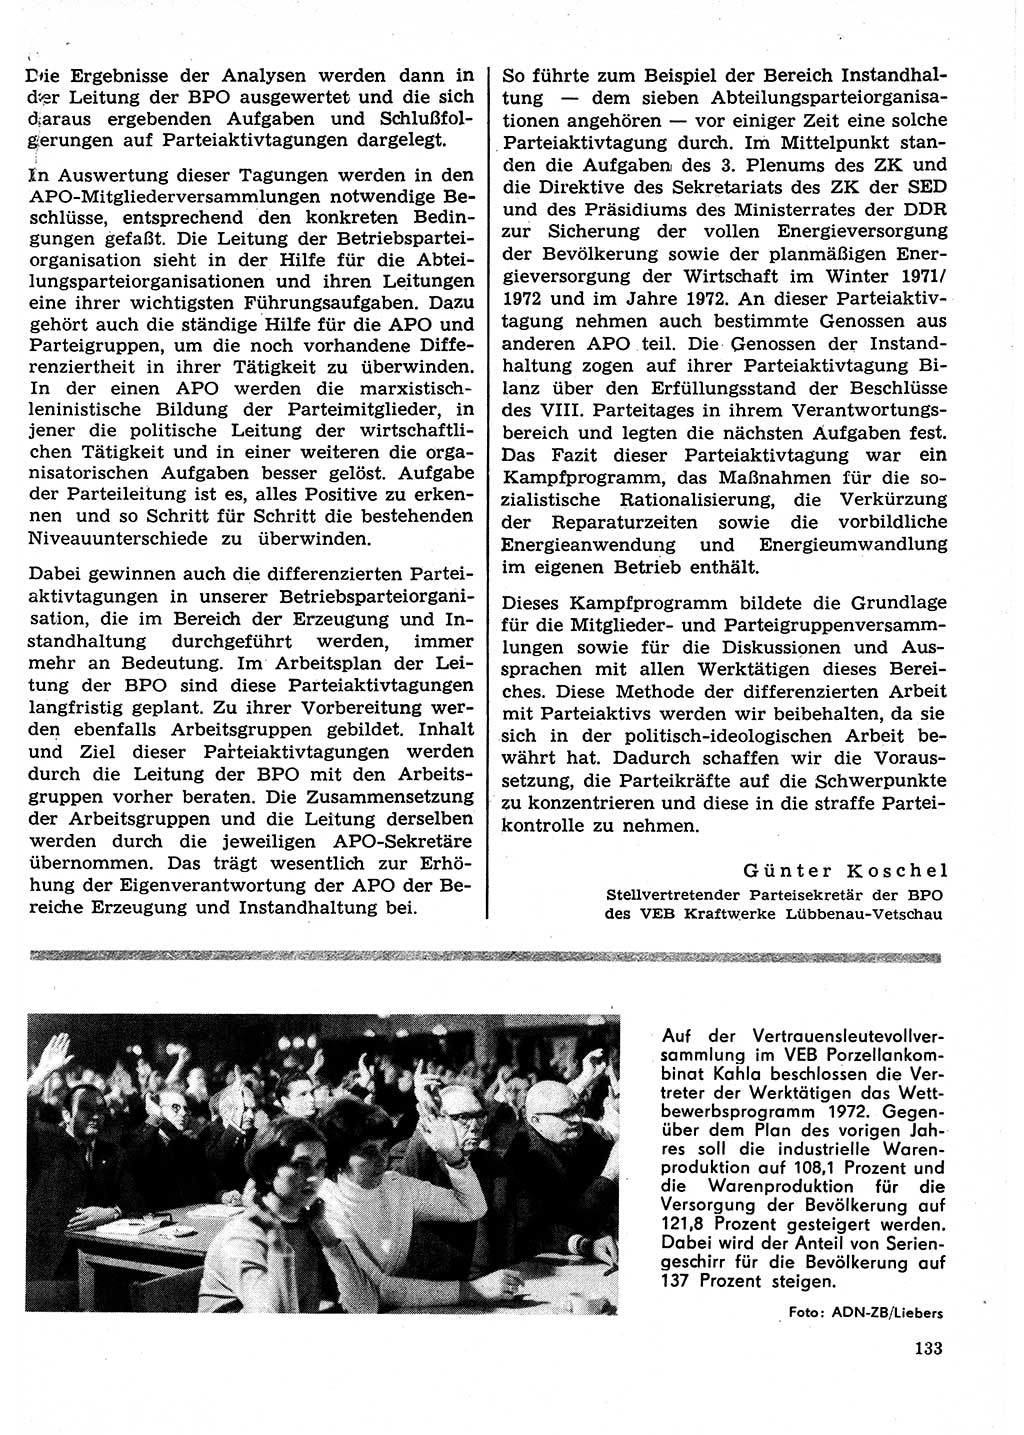 Neuer Weg (NW), Organ des Zentralkomitees (ZK) der SED (Sozialistische Einheitspartei Deutschlands) für Fragen des Parteilebens, 27. Jahrgang [Deutsche Demokratische Republik (DDR)] 1972, Seite 133 (NW ZK SED DDR 1972, S. 133)